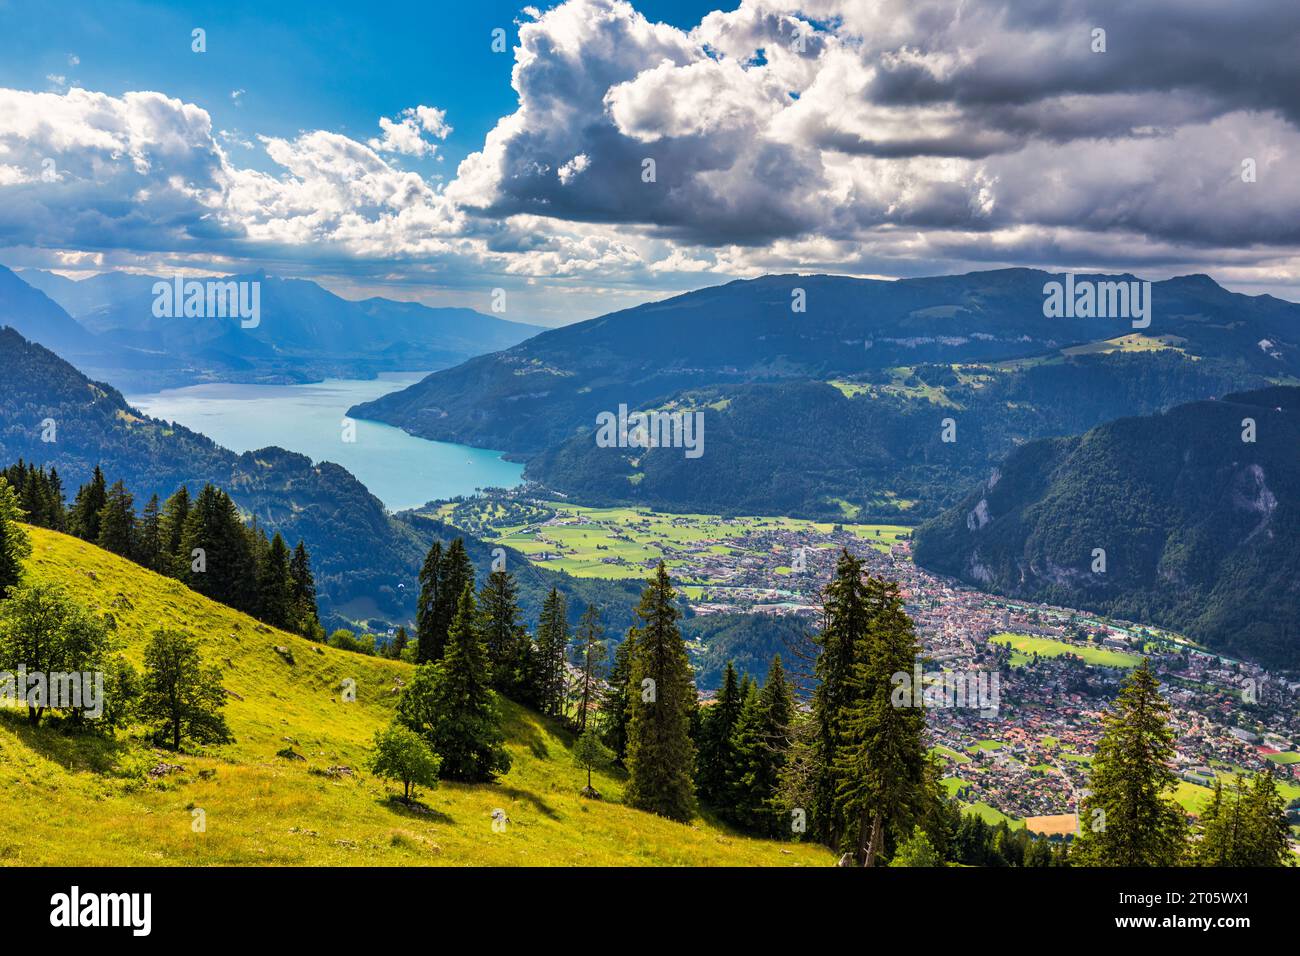 Splendida vista sul lago di Thun e sul lago di Brienz dal sentiero Schynige Platte nell'Oberland Bernese, Canton Berna, Svizzera. Montagna popolare in al svizzero Foto Stock